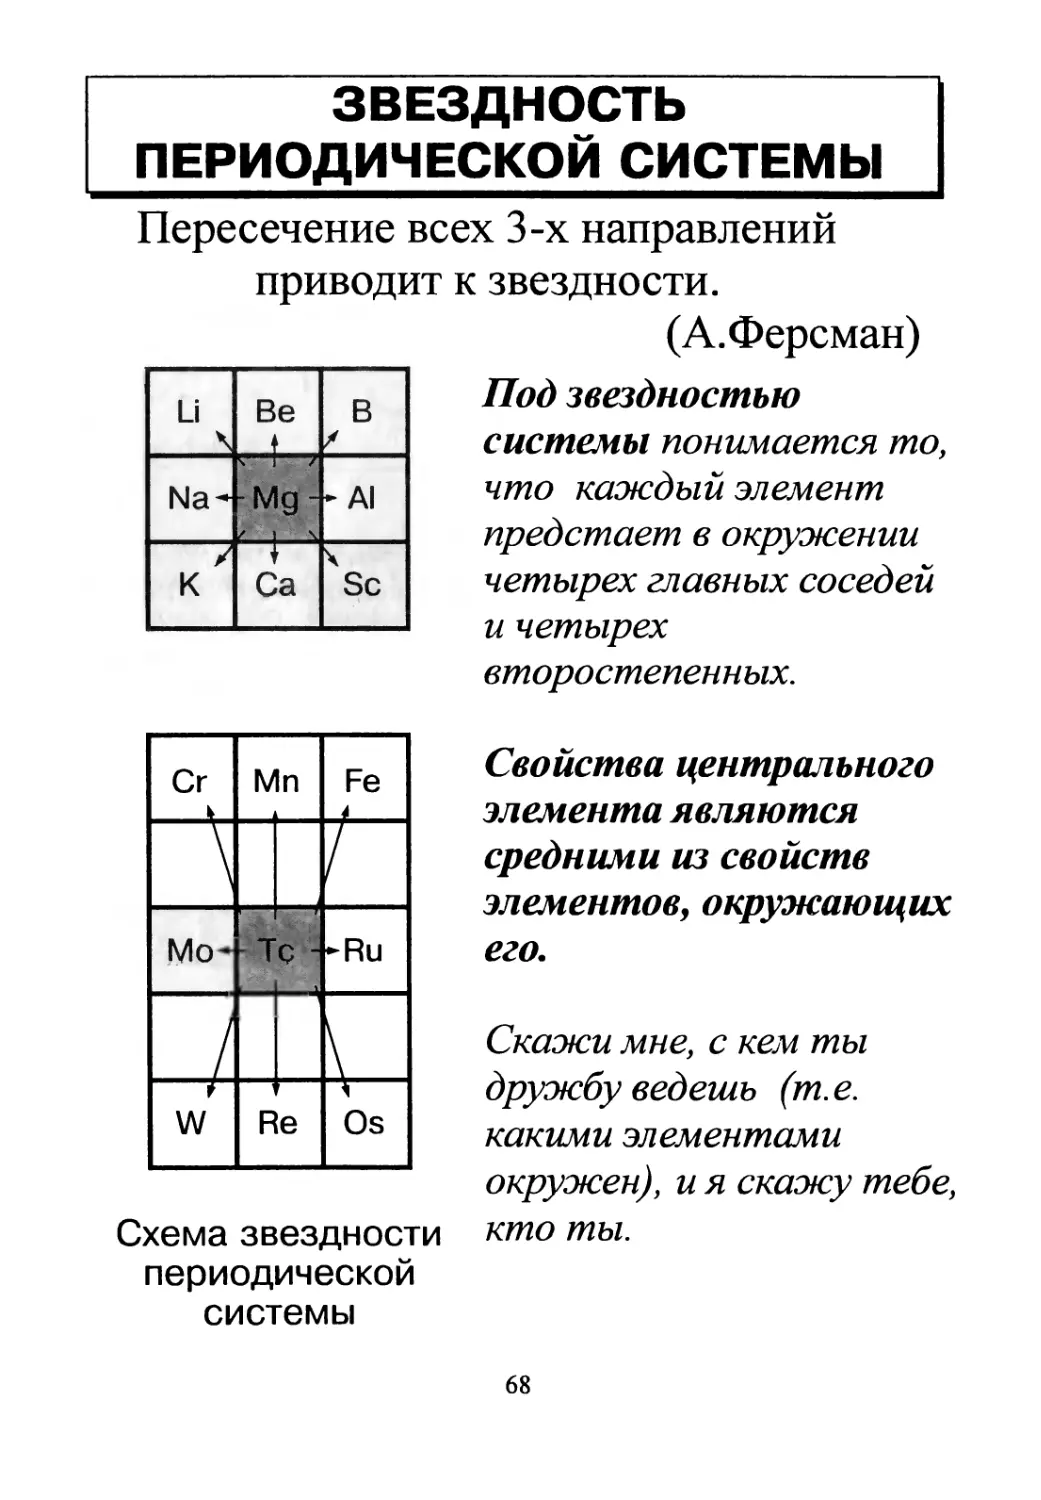 8.6 План характеристики химических элементов по периодической системе химических элементов Д.И.Менделеева